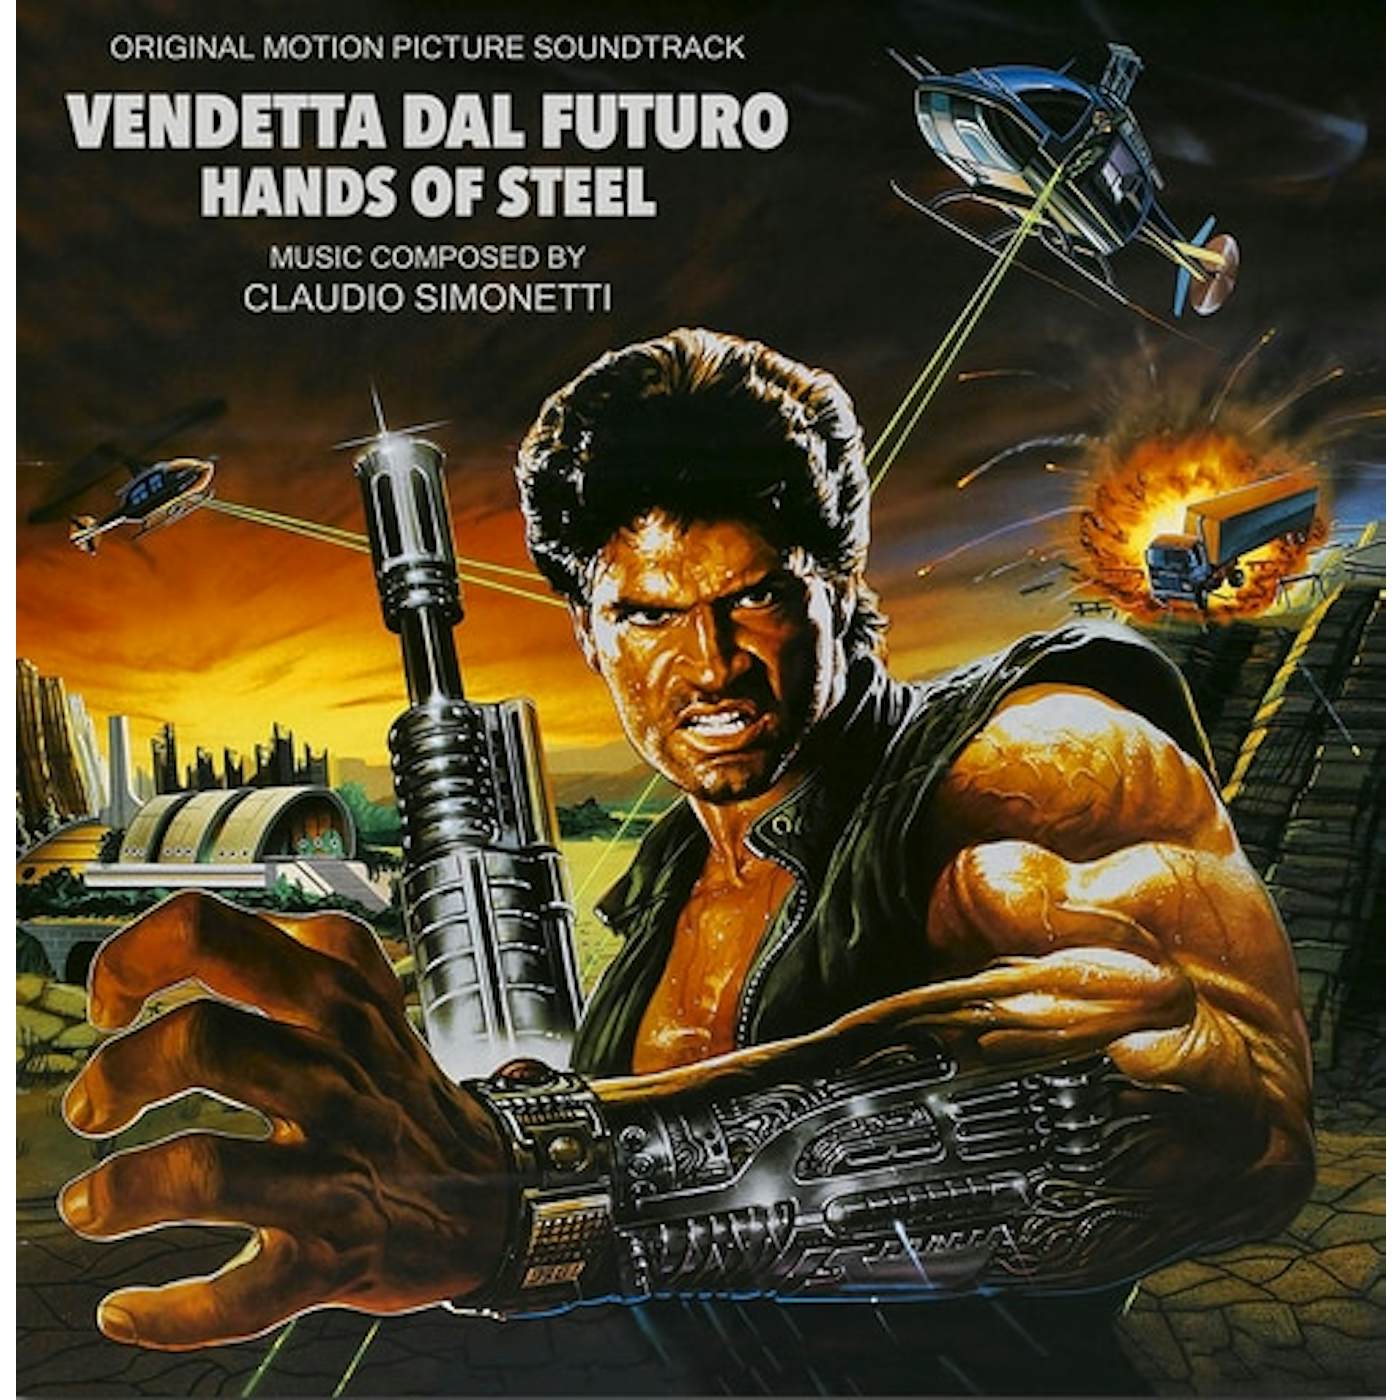 Claudio Simonetti HANDS OF STEEL (VENDETTA DAL FUTURO) / Original Soundtrack Vinyl Record